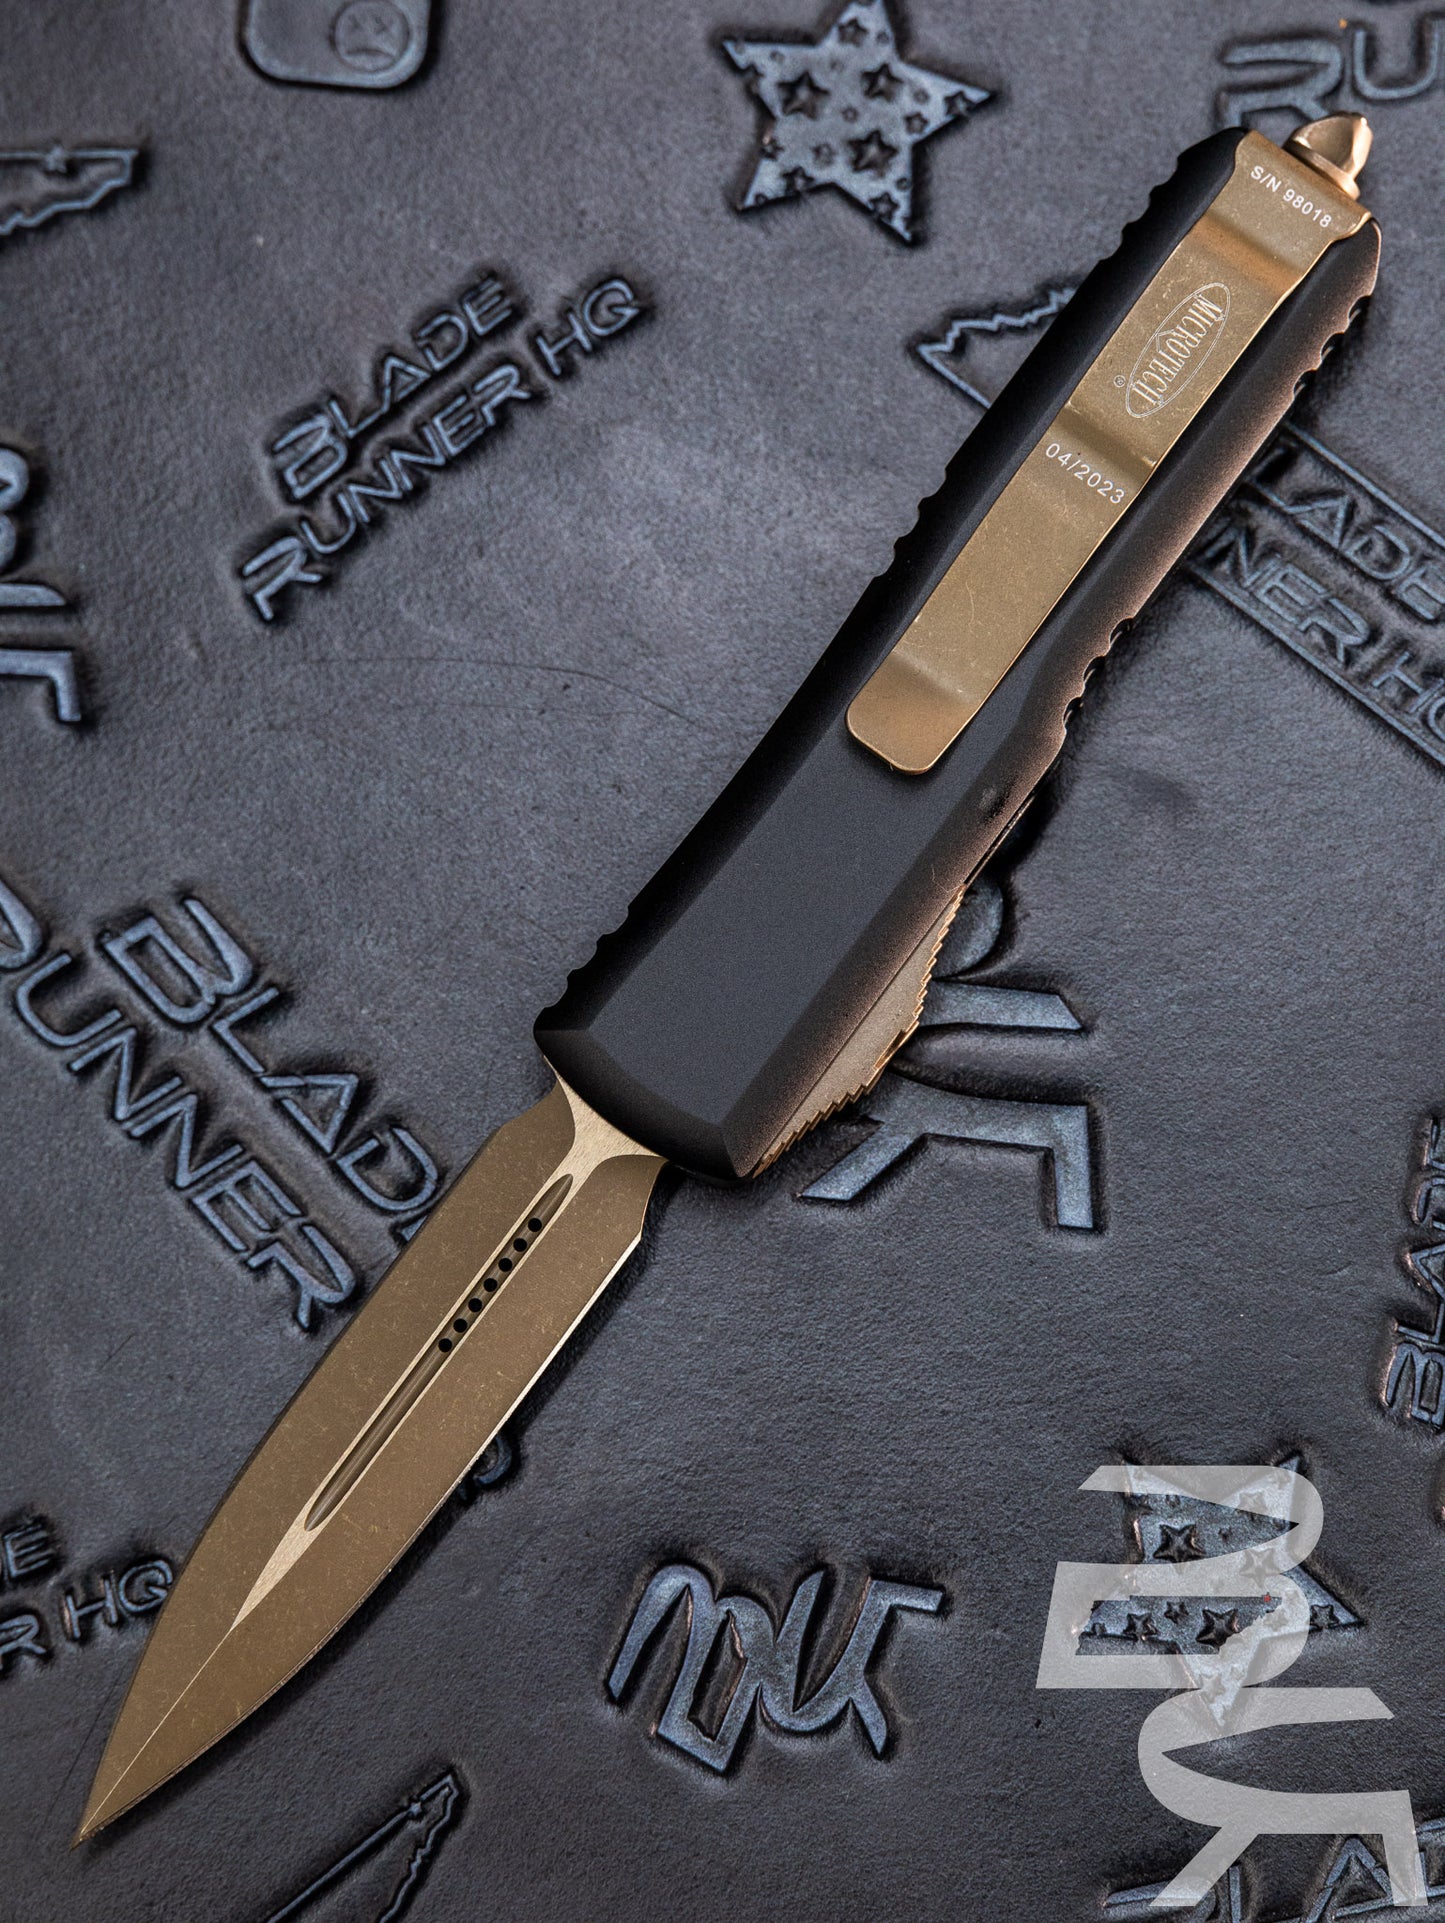 Microtech 232-13AP UTX-85 D/E - Black Handle - Bronze Apocalyptic Blade